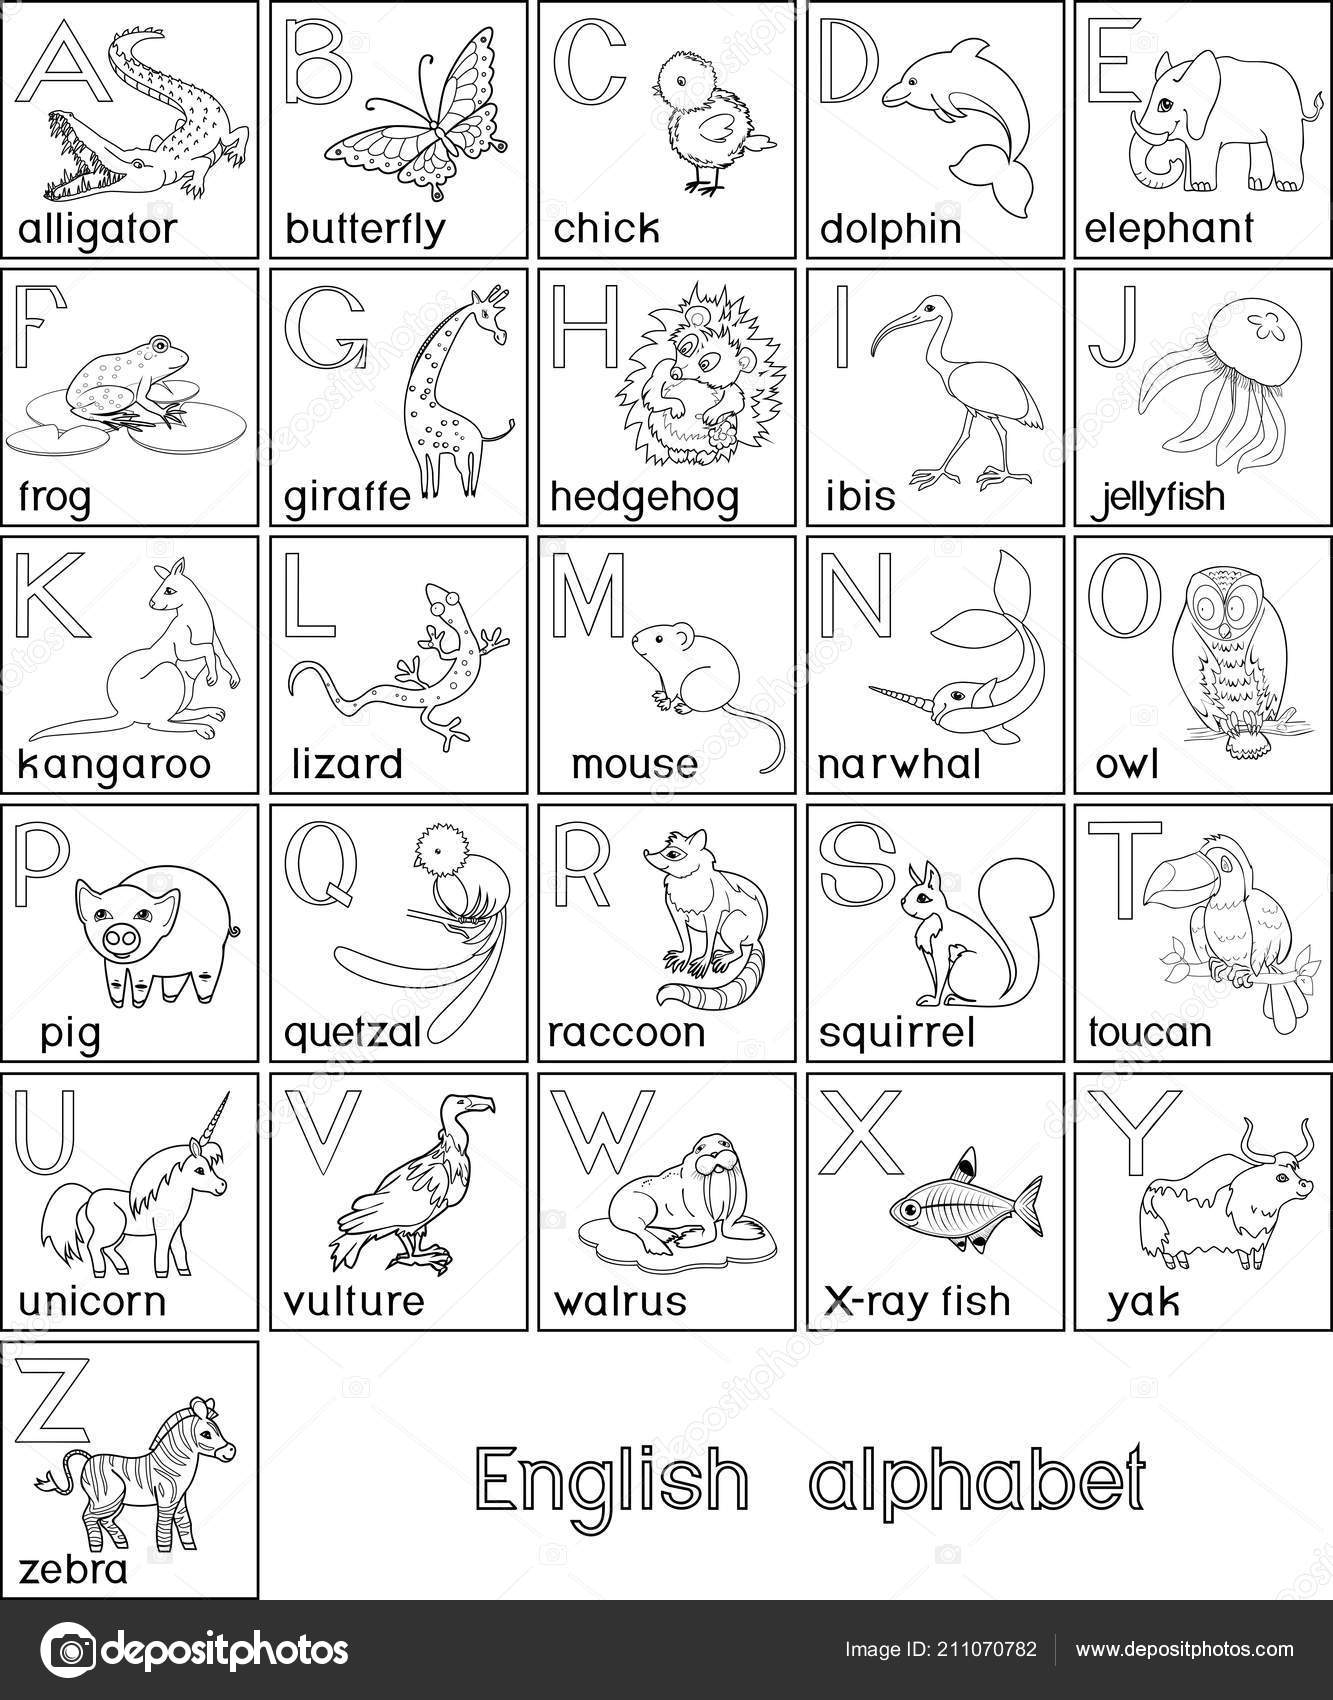 Dibujos Para Colorear Del Alfabeto En Ingles Impresion Gratuita